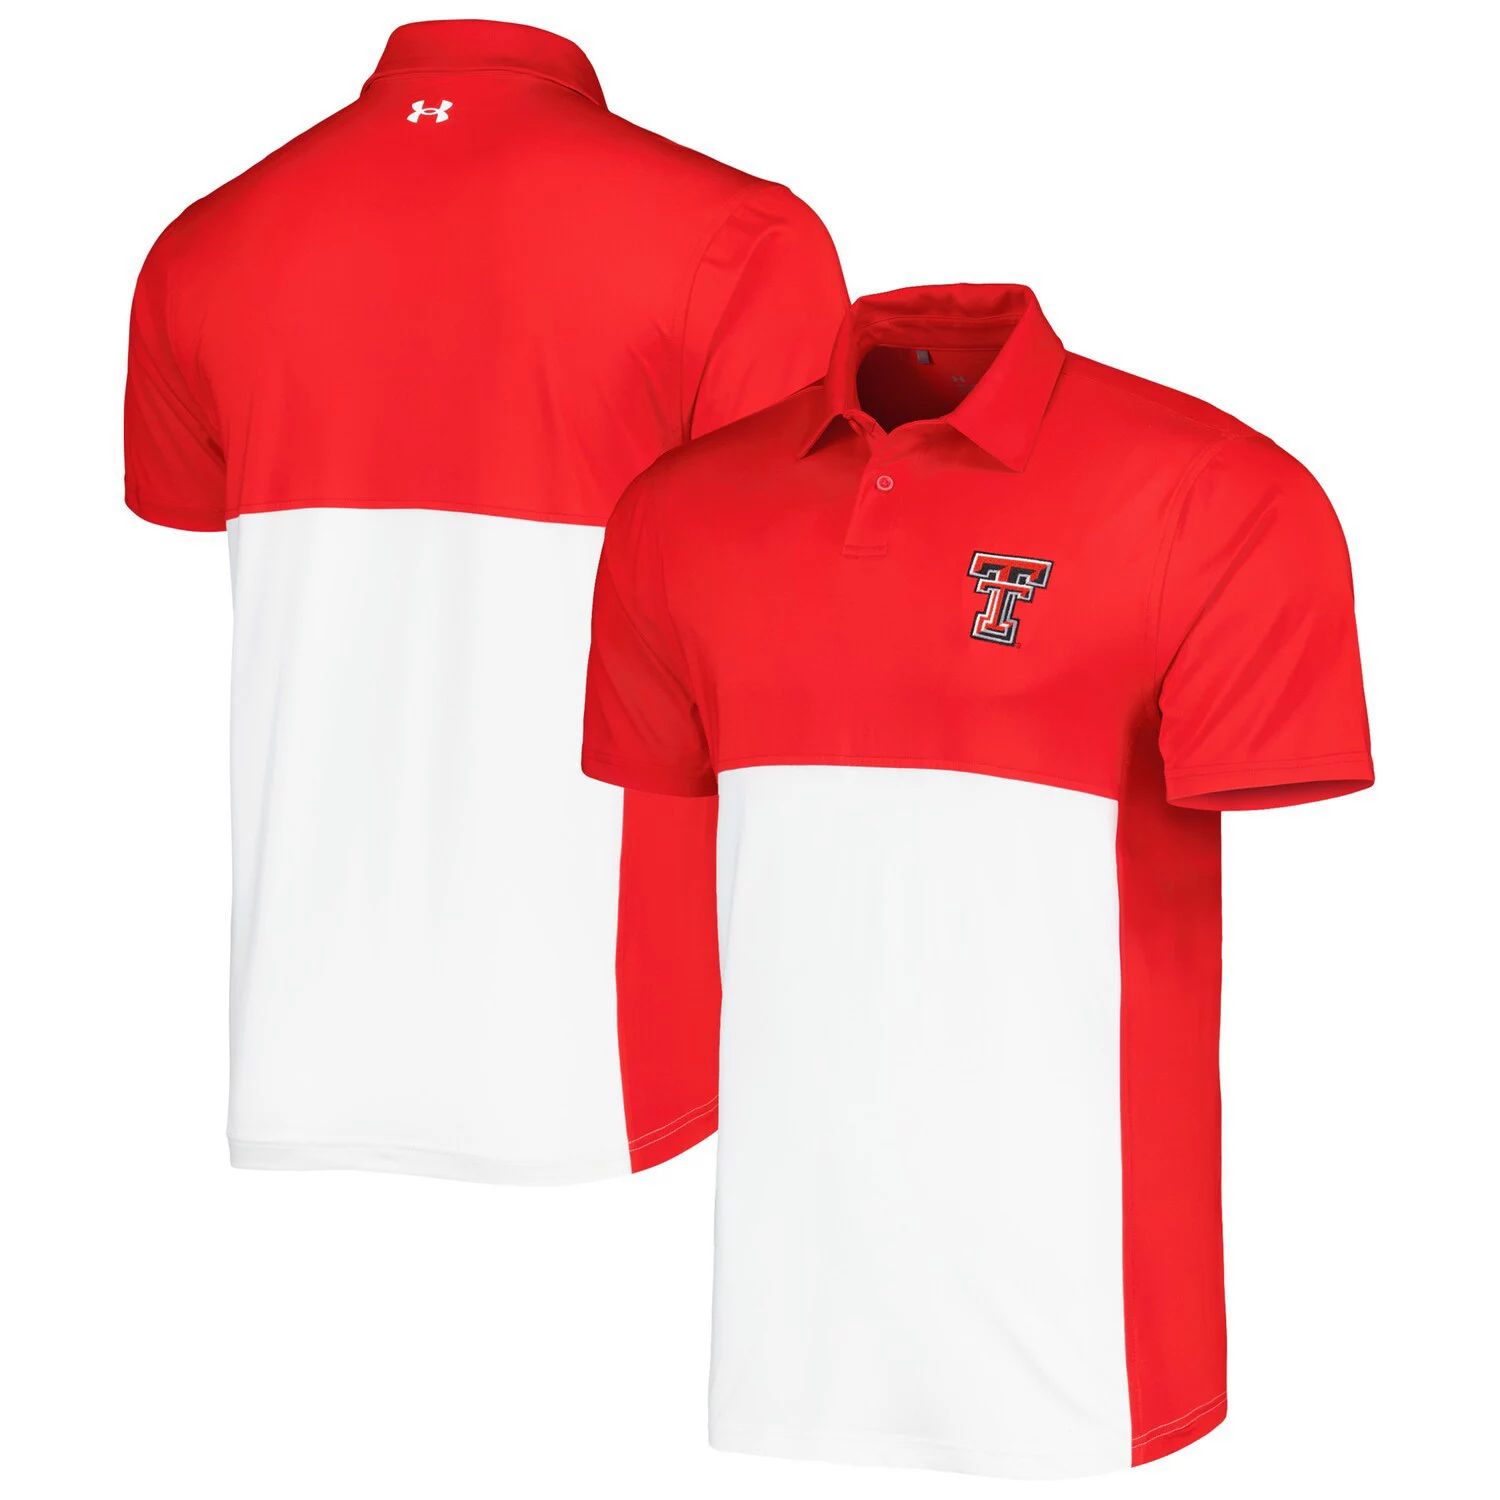 Мужская красно-белая футболка Texas Tech Red Raiders зеленая рубашка-поло Performance Polo Under Armour